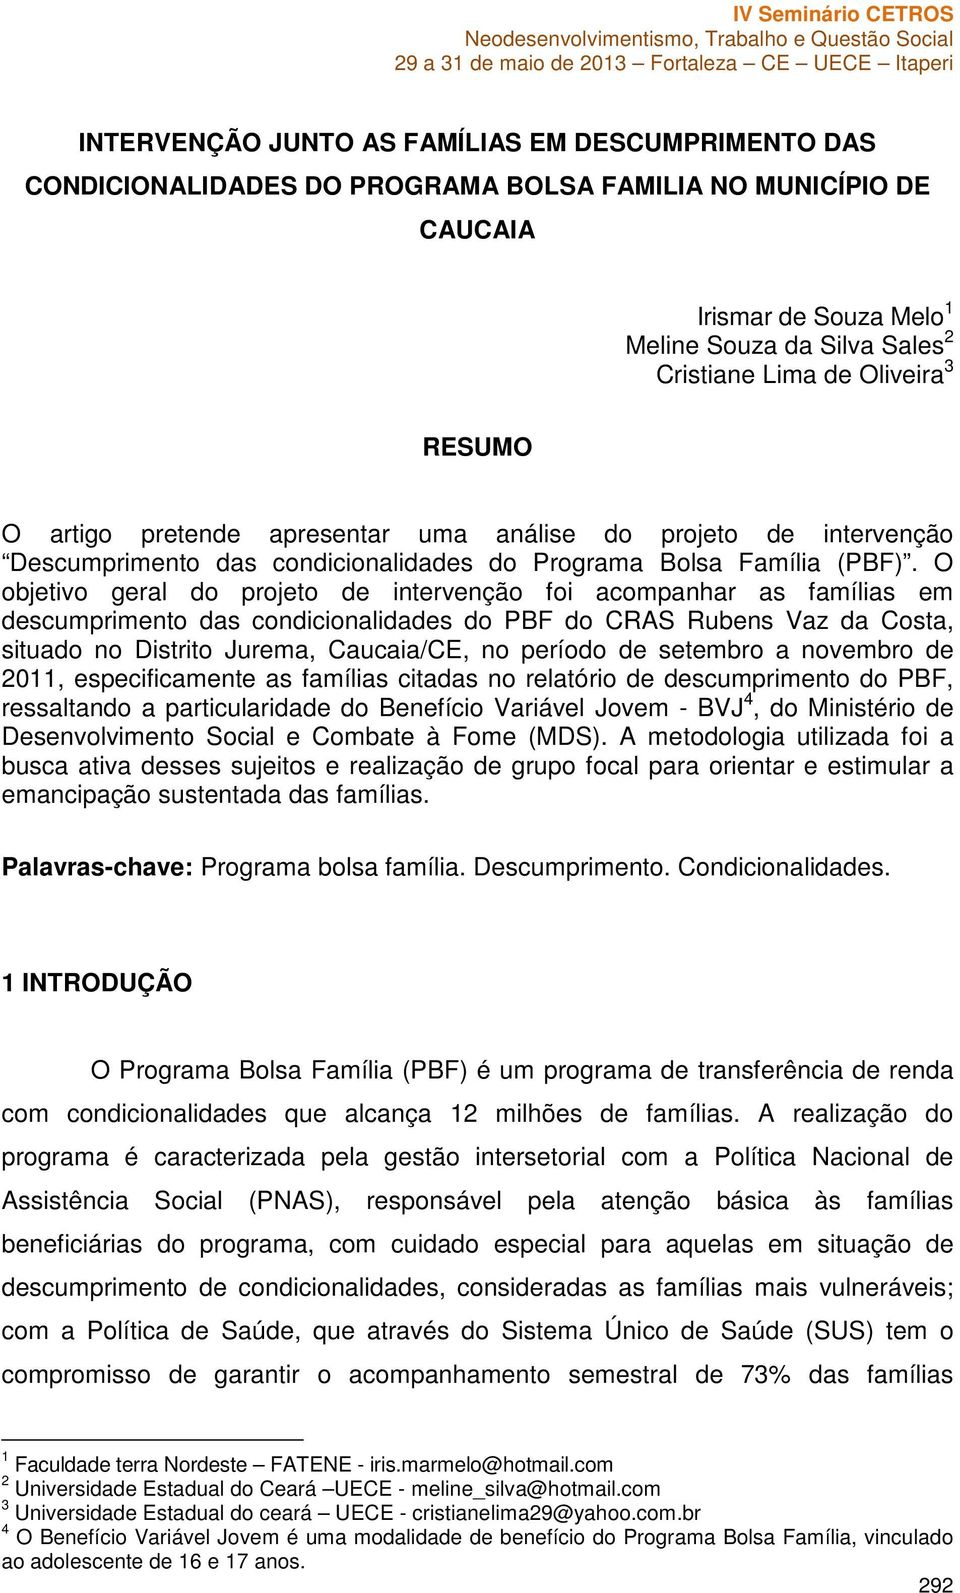 O objetivo geral do projeto de intervenção foi acompanhar as famílias em descumprimento das condicionalidades do PBF do CRAS Rubens Vaz da Costa, situado no Distrito Jurema, Caucaia/CE, no período de